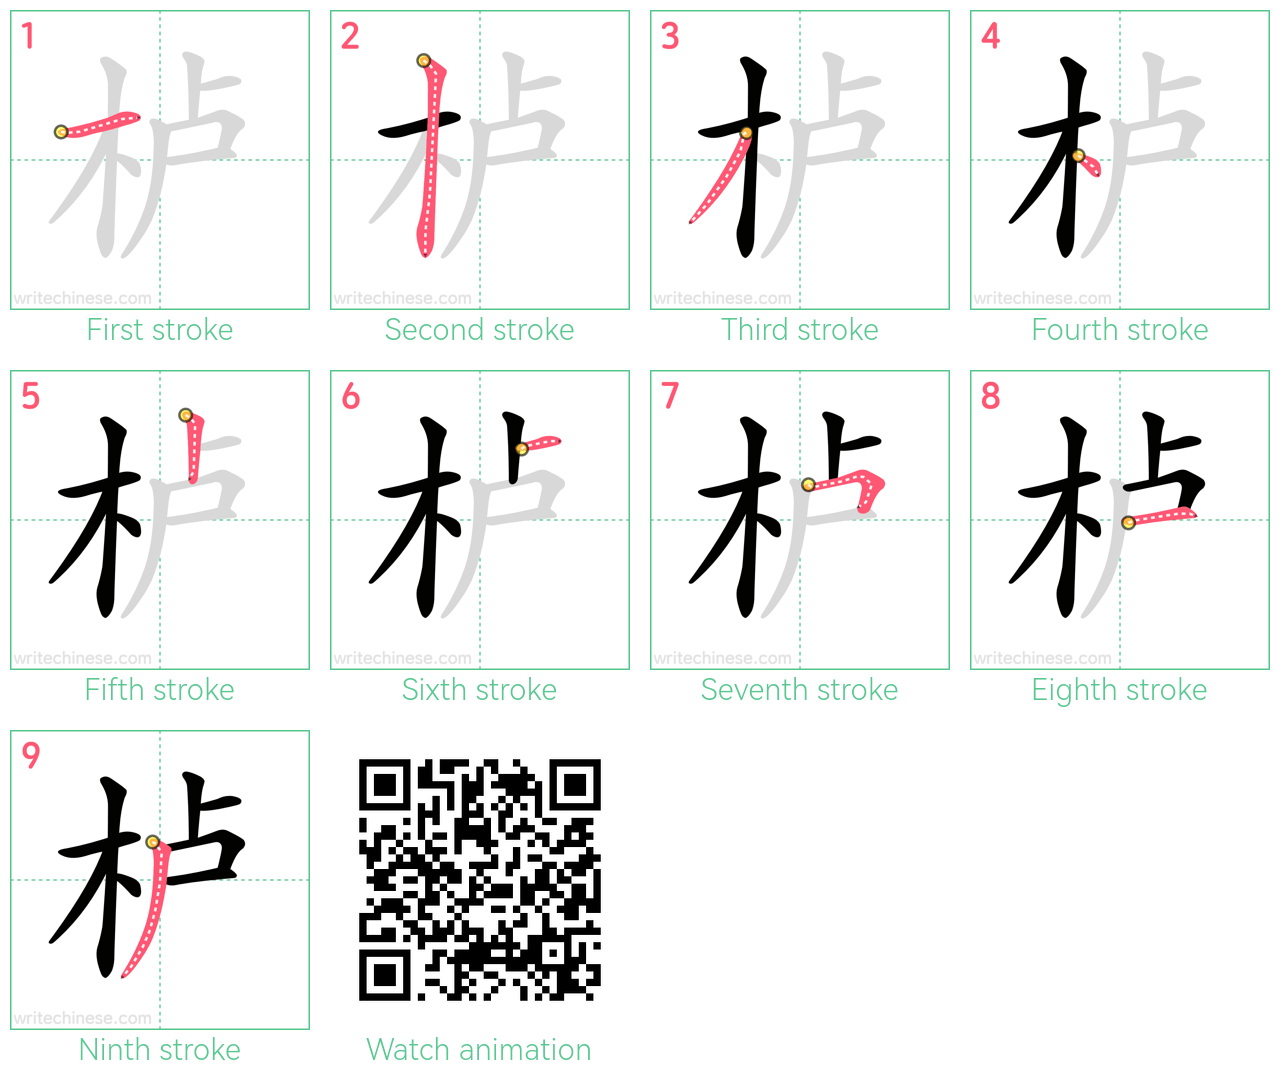 栌 step-by-step stroke order diagrams